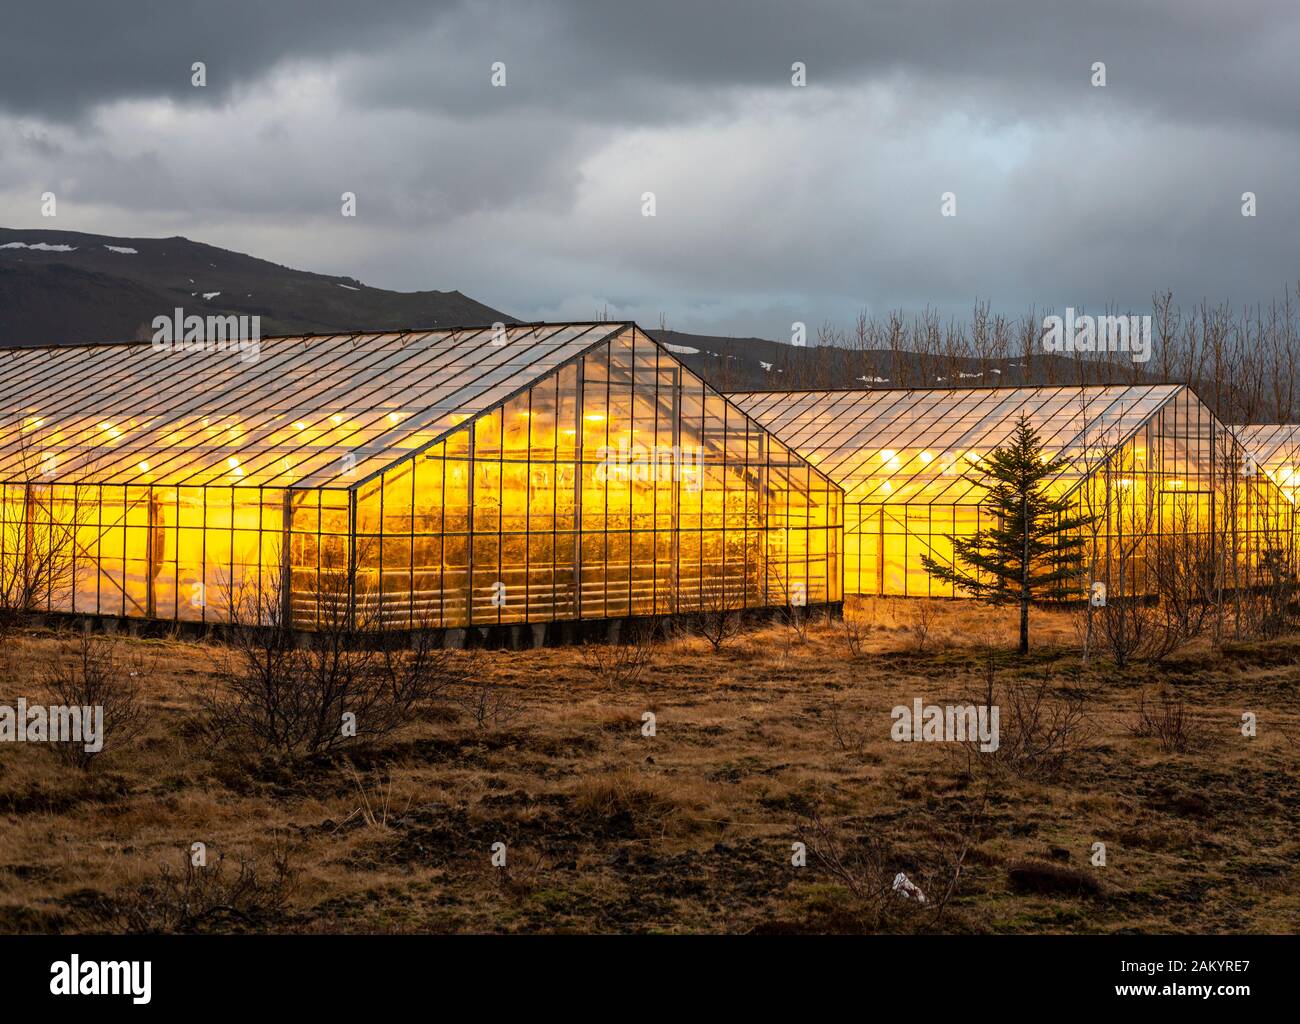 Illuminated greenhouses at dusk, heated with geothermal energy,Hveragerdi, Iceland Stock Photo